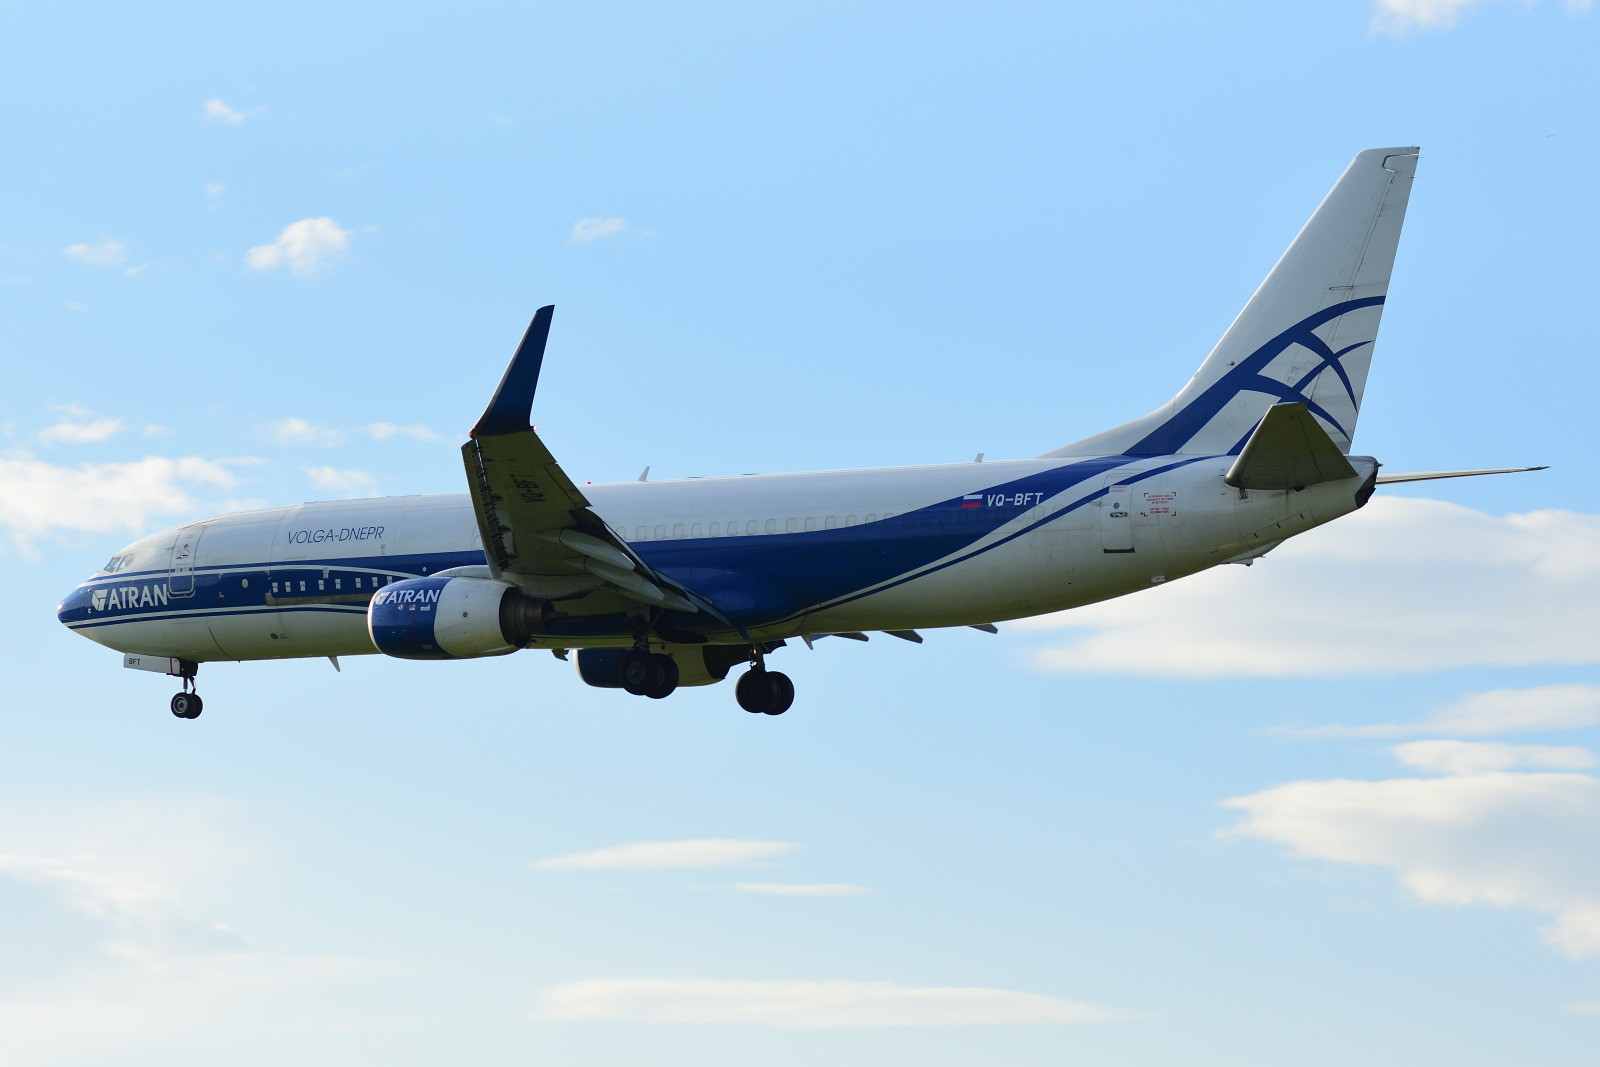 Boeing737, VQ-BFT